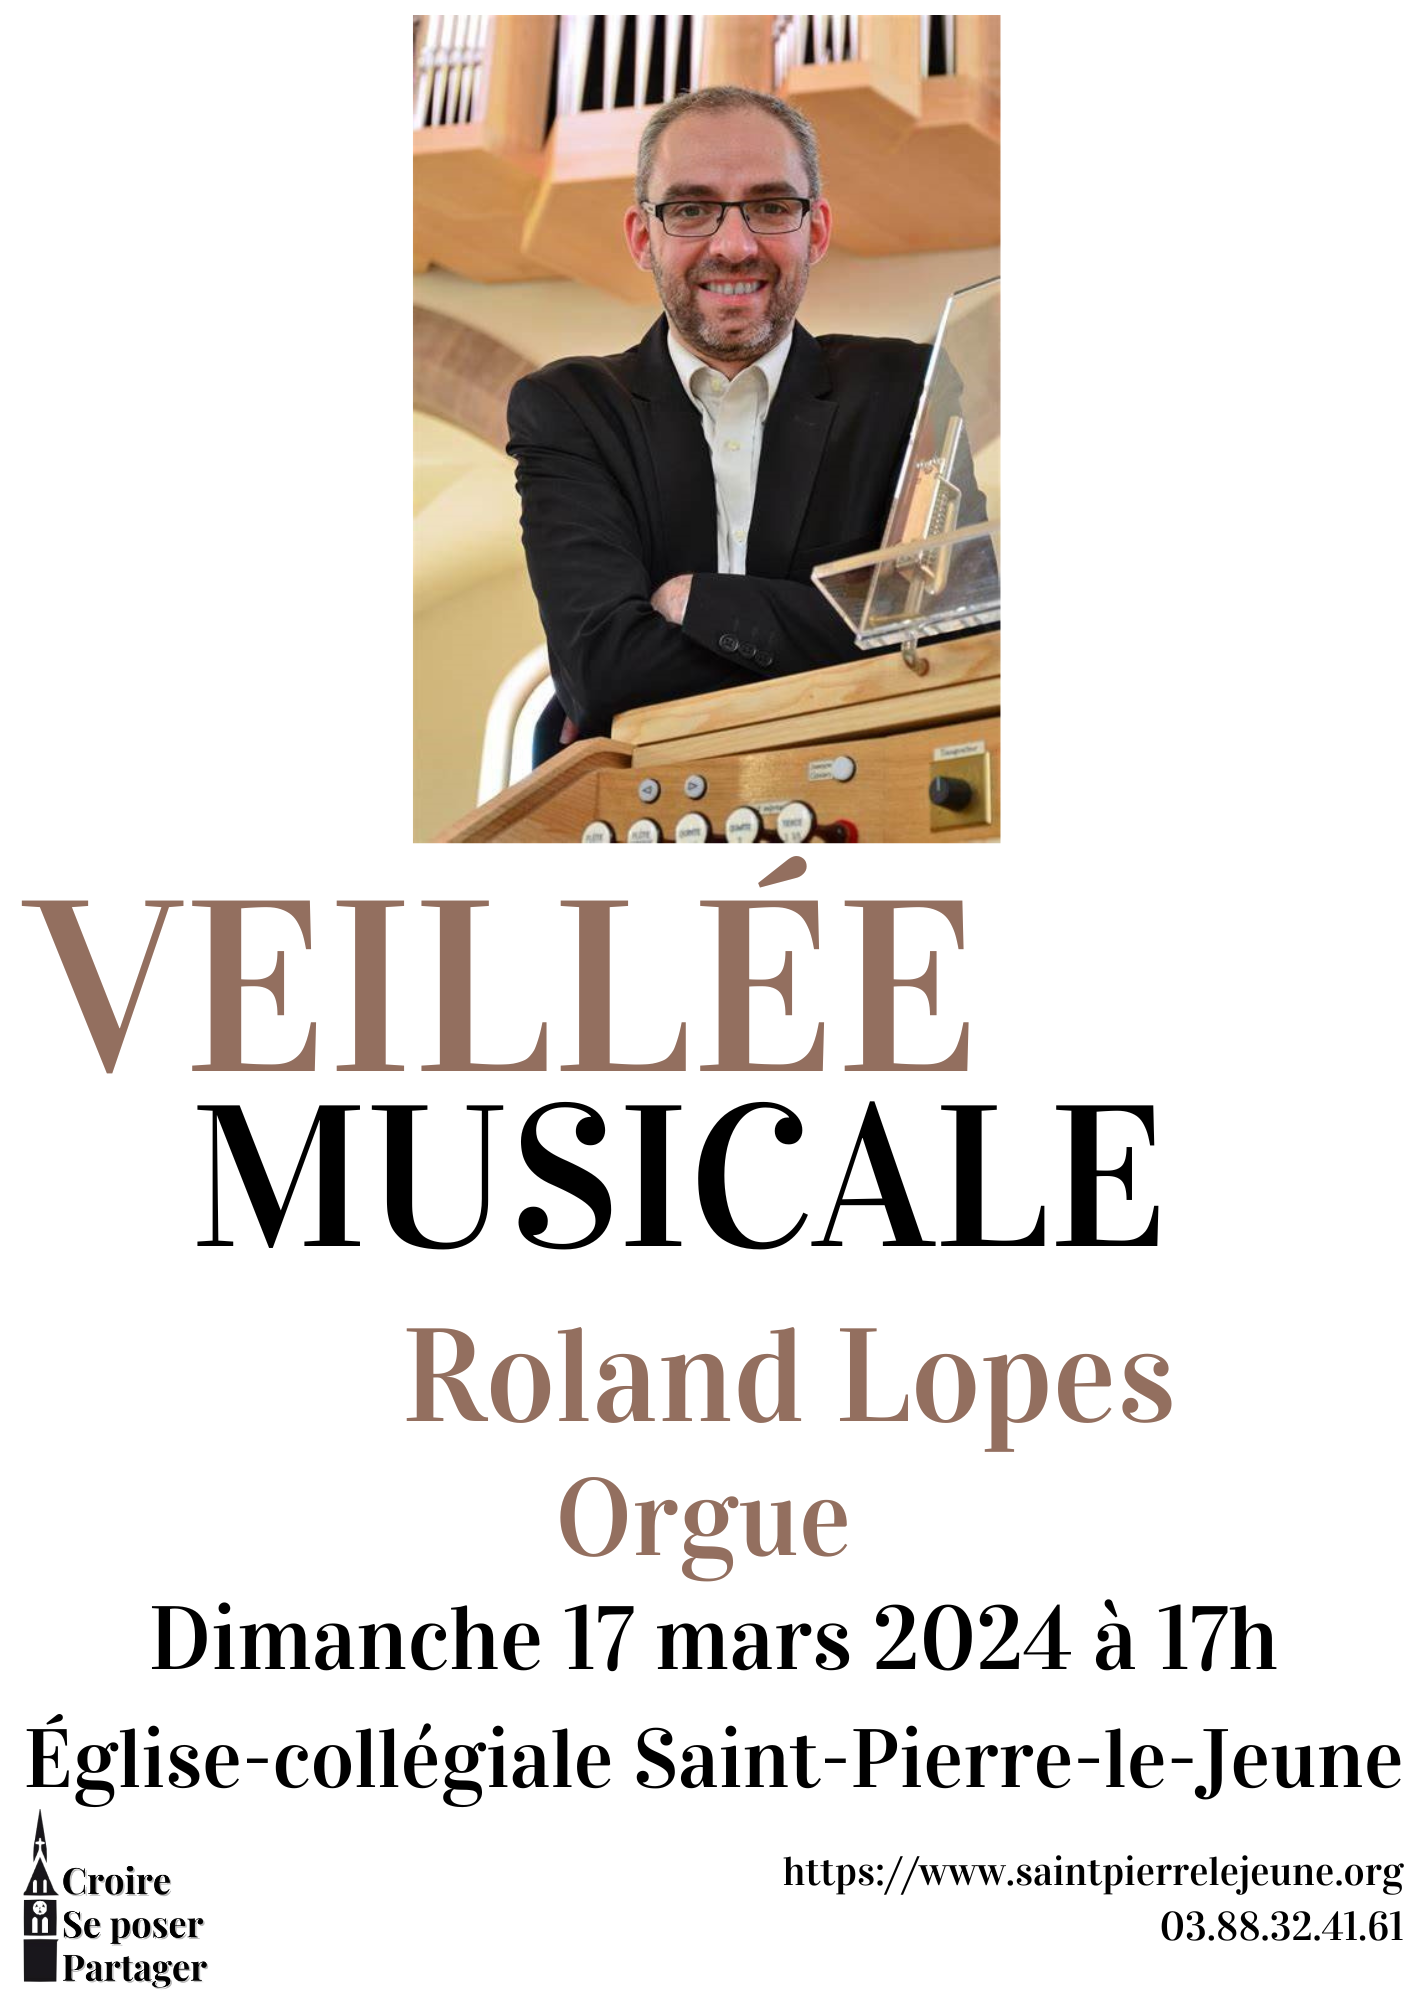 Veillée musicale - Roland Lopes